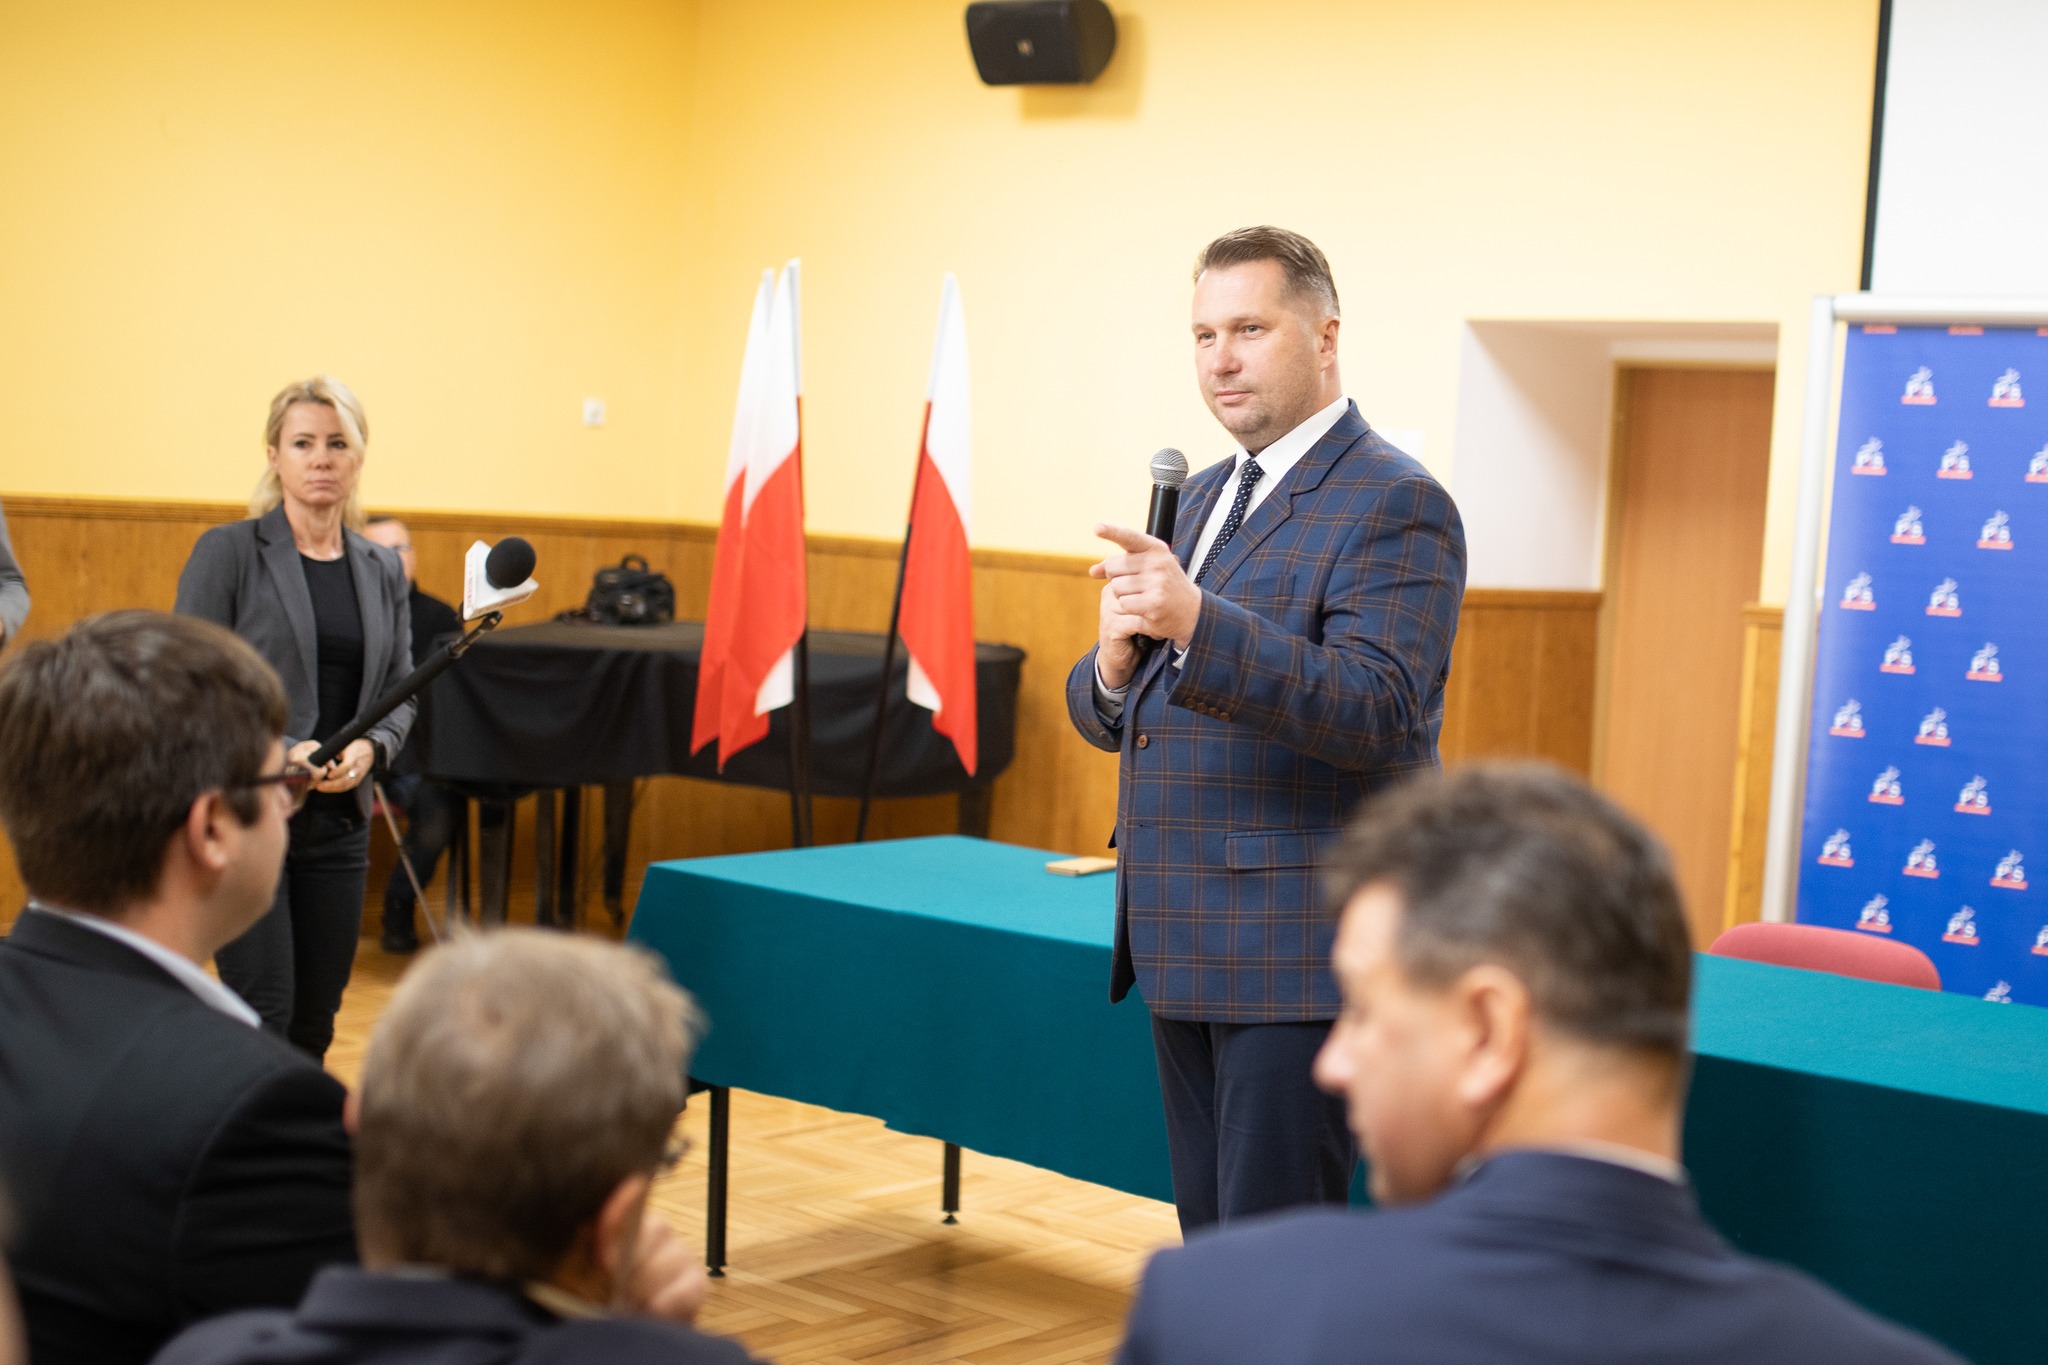 Po to są klasy przygotowawcze, żeby nauczyć się języka polskiego - podkreślił minister edukacji i nauki Przemysław Czarnek (Fot. MEiN Facebook)